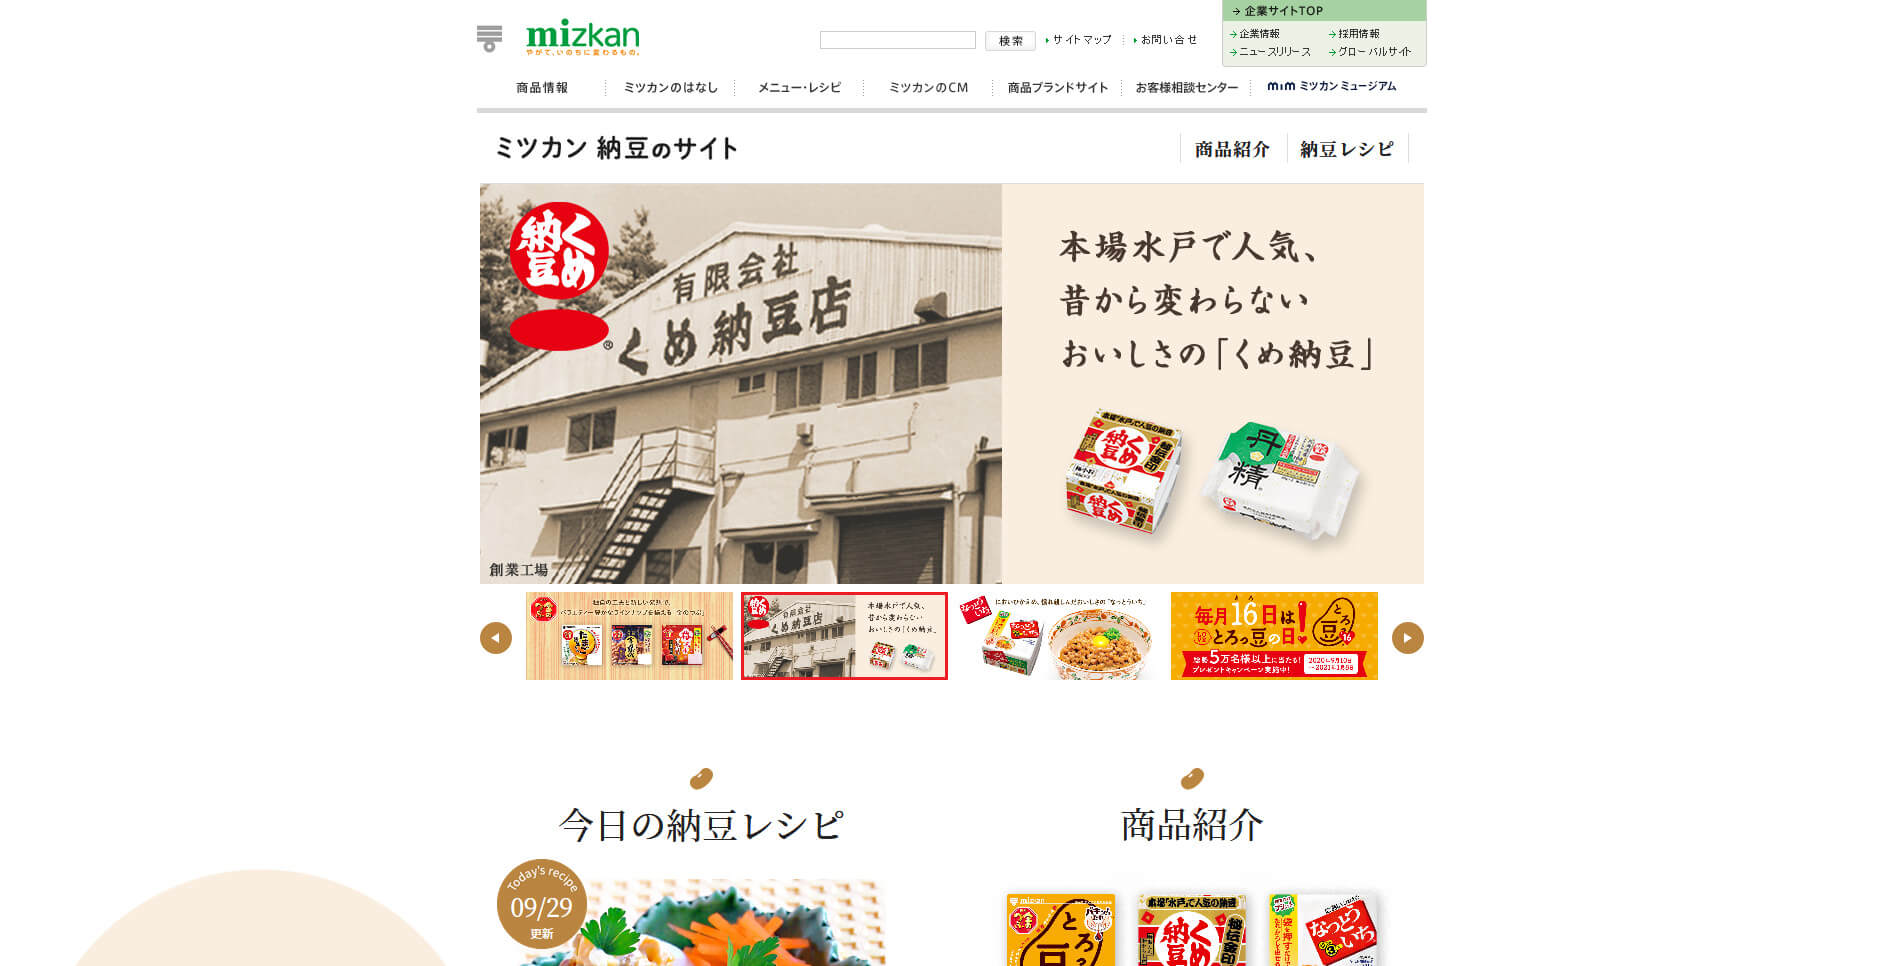  	ミツカン　納豆のサイト	 